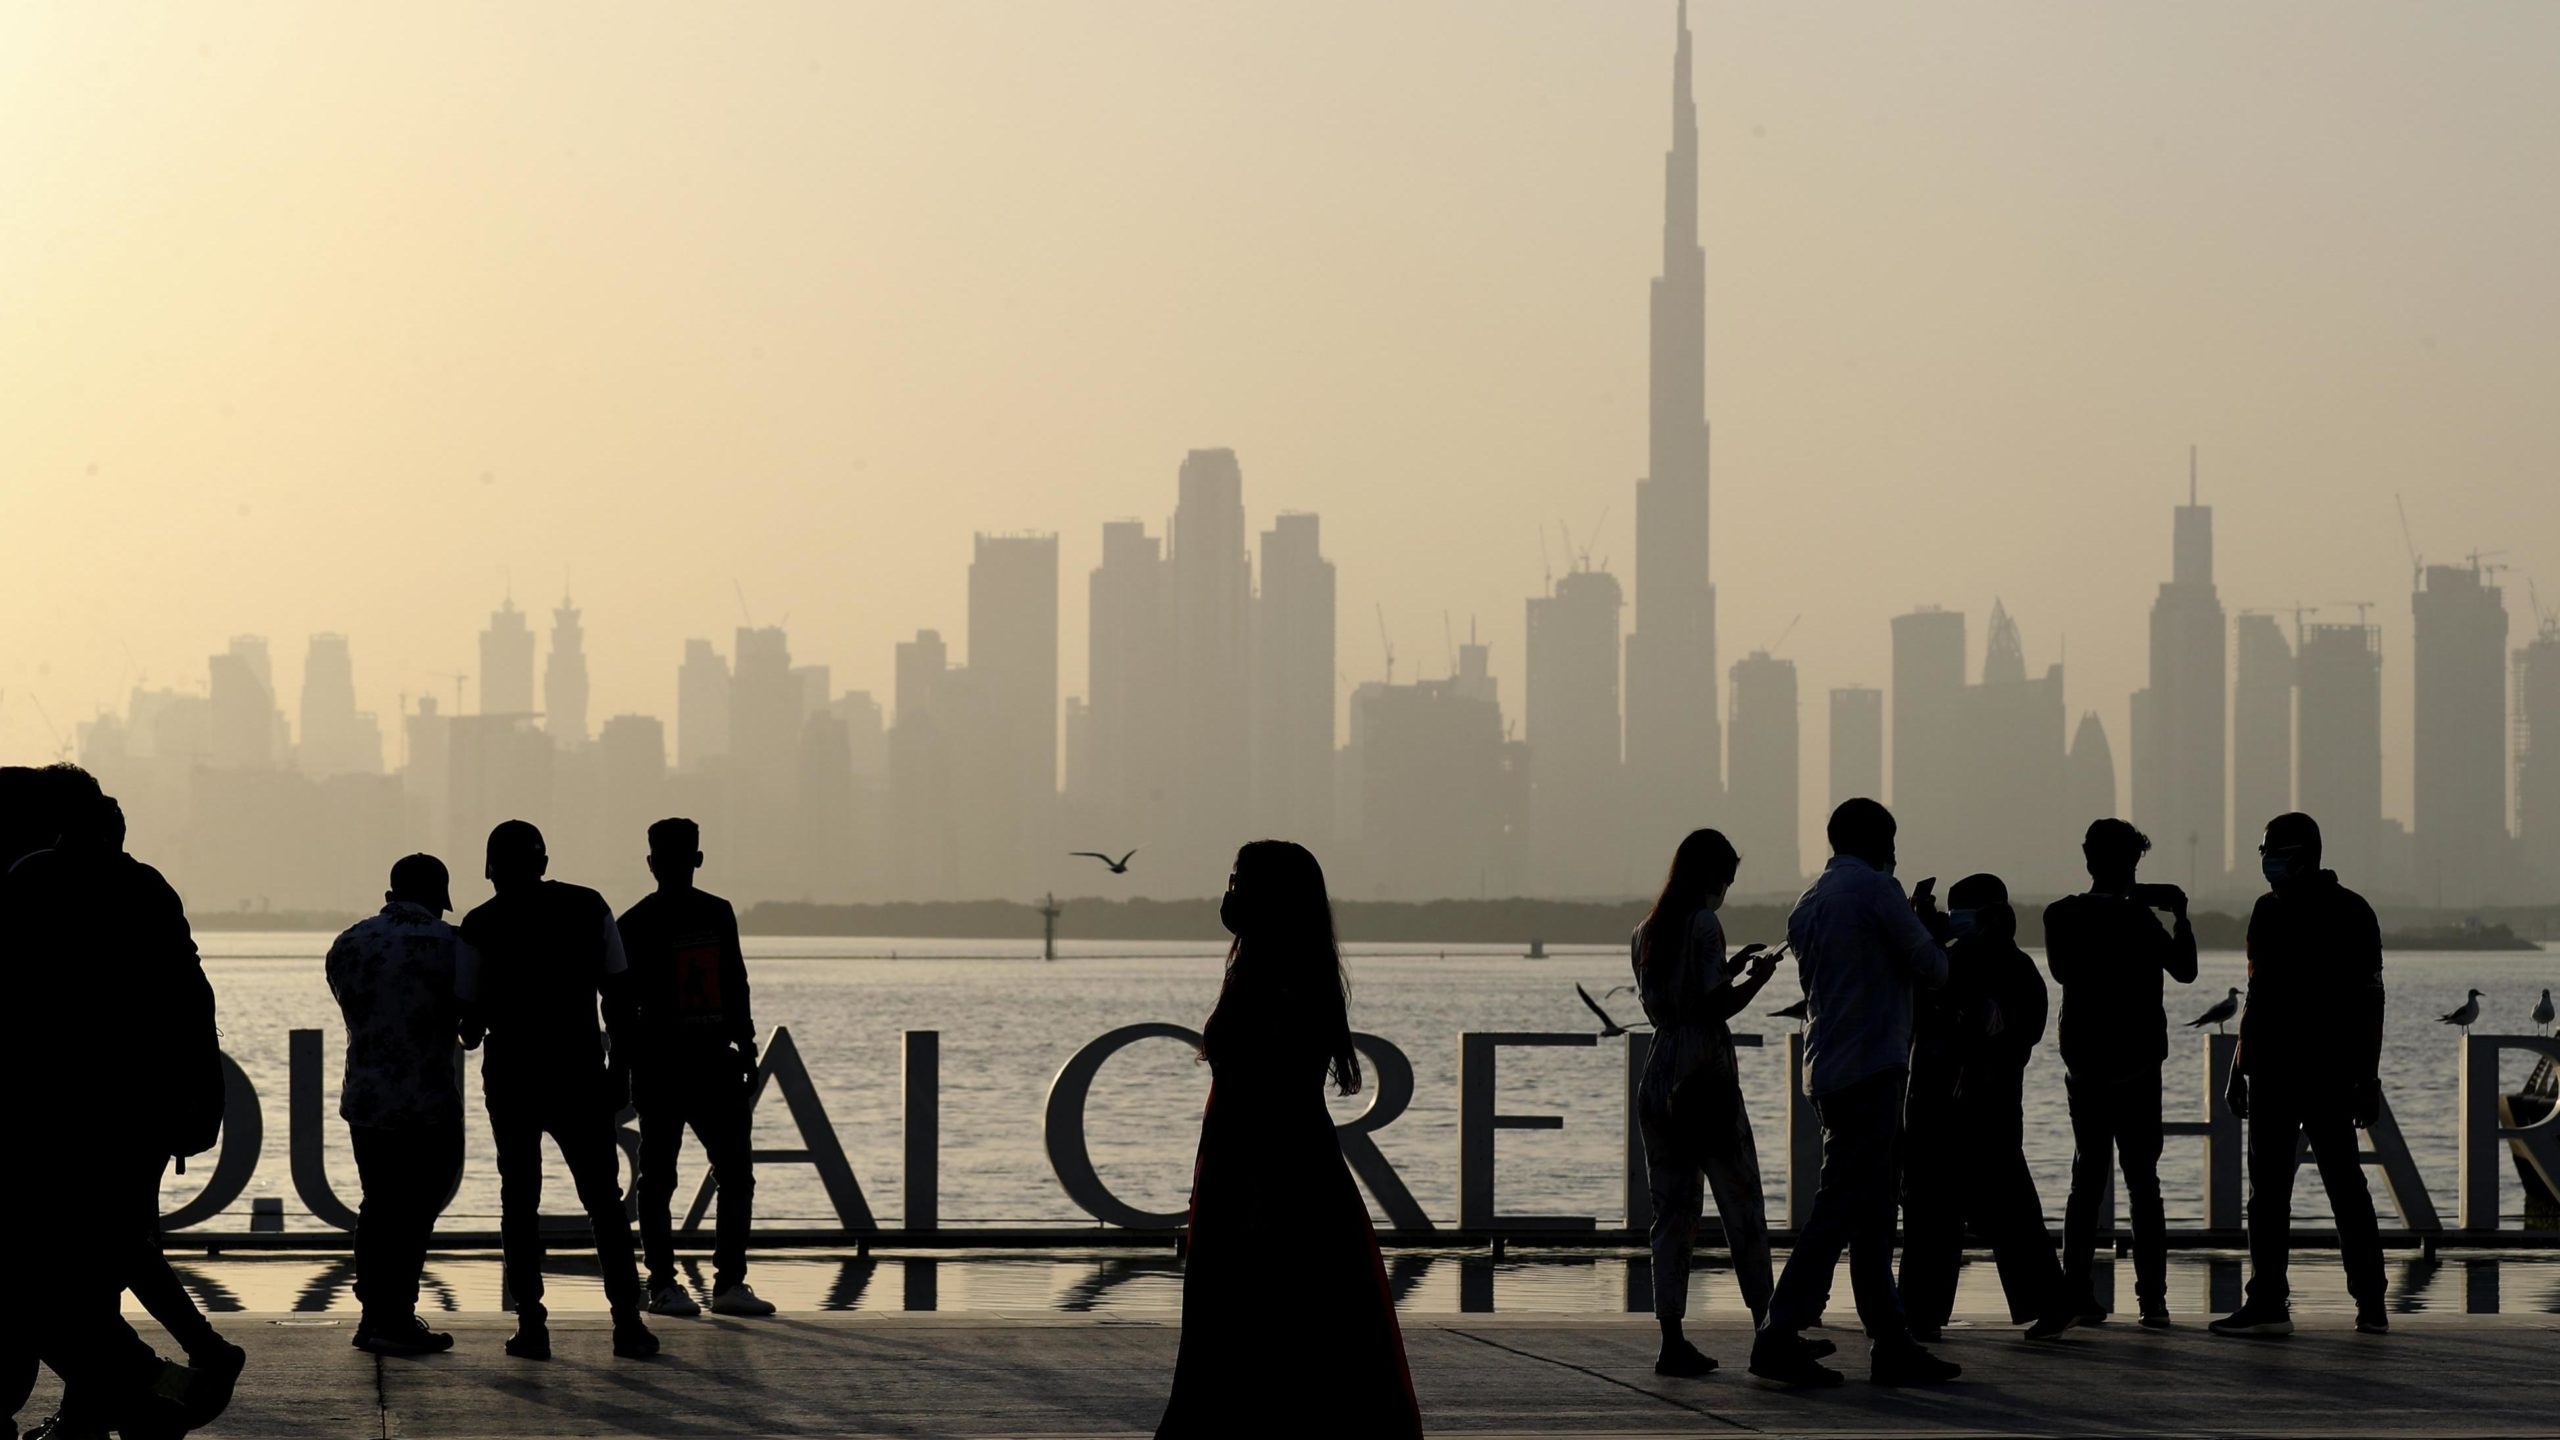 امیر دبی می گوید کسانی که شرایط دریافت شهروندی امارات را دارند شامل سرمایه گذاران، استعدادهای ویژه، پزشکان، مهندسان و هنرمندان خواهند بود